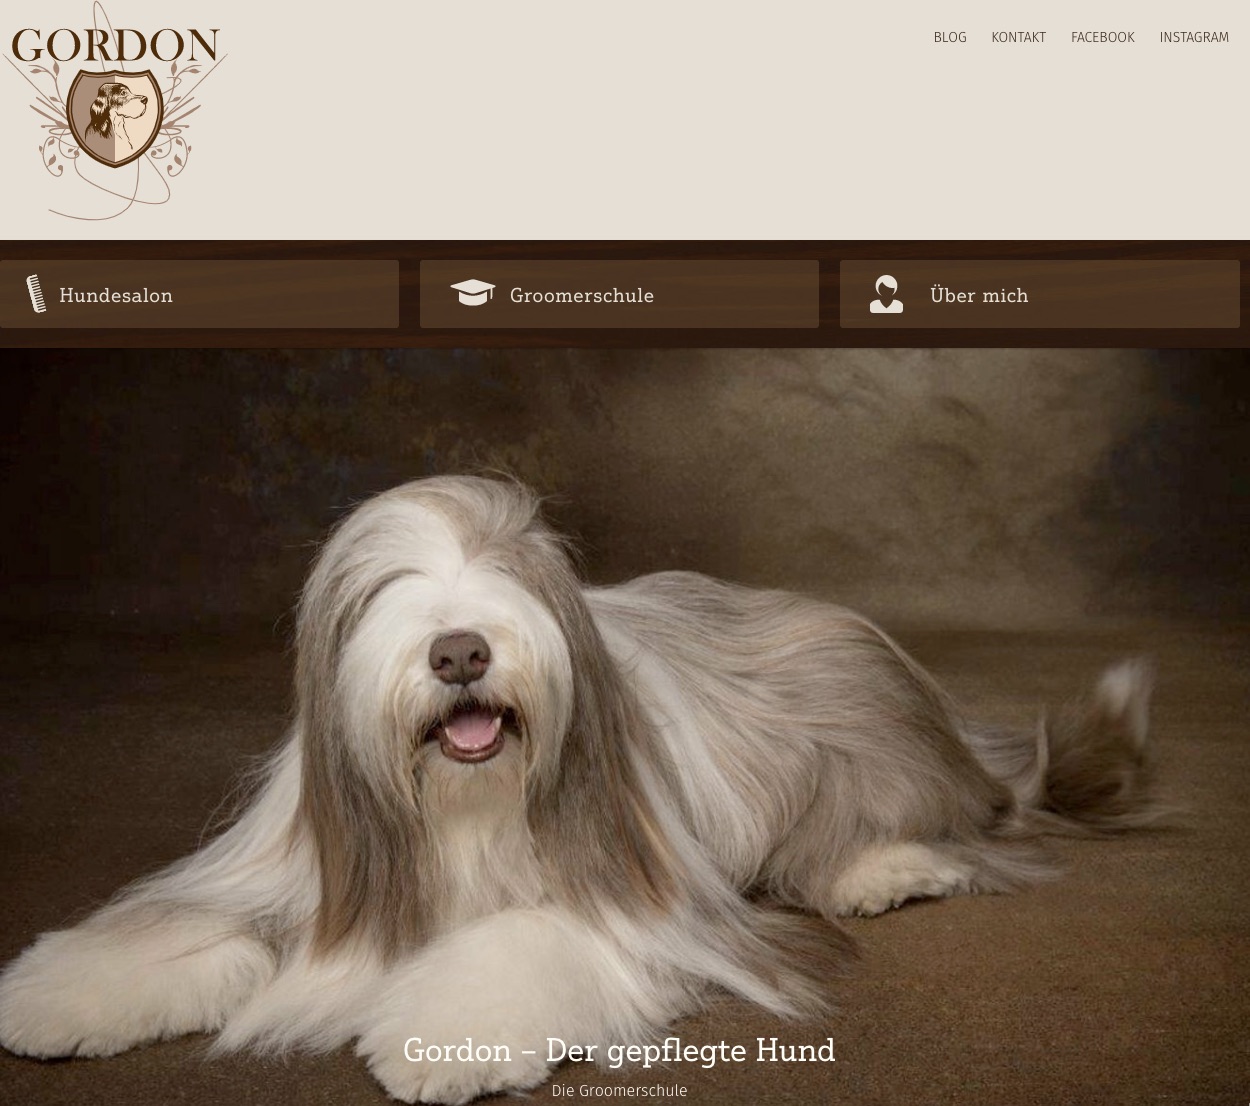 Hundesalon Gordon – Der gepflegte Hund in Wiesbaden von Kristine Schirmer